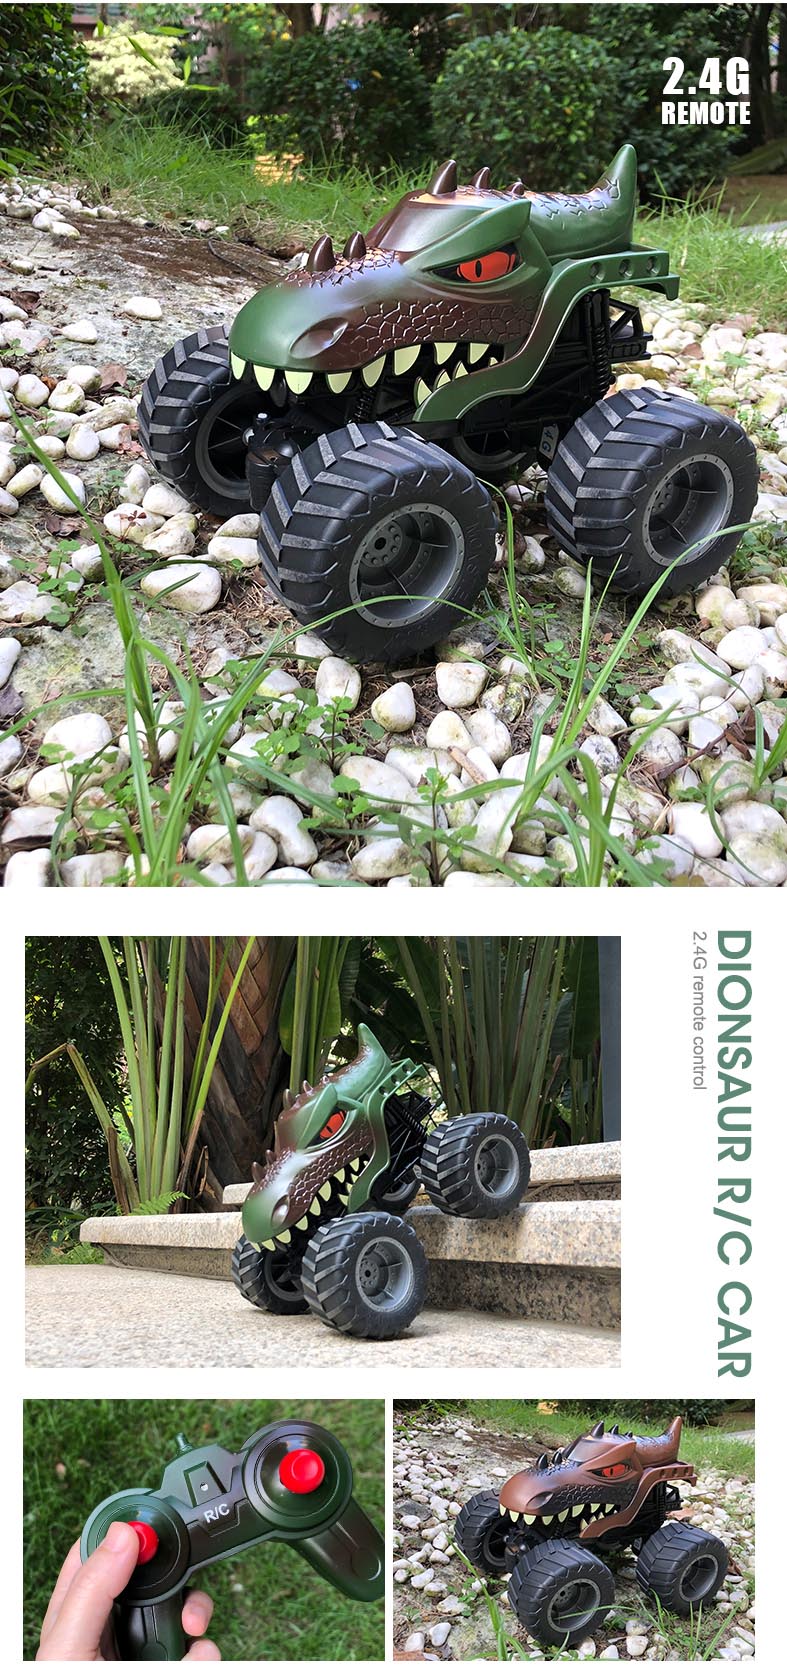 2.4G 儿童玩具车恐龙遥控车遥控攀爬车越野车YY2056 - 遥控攀爬车 - 5